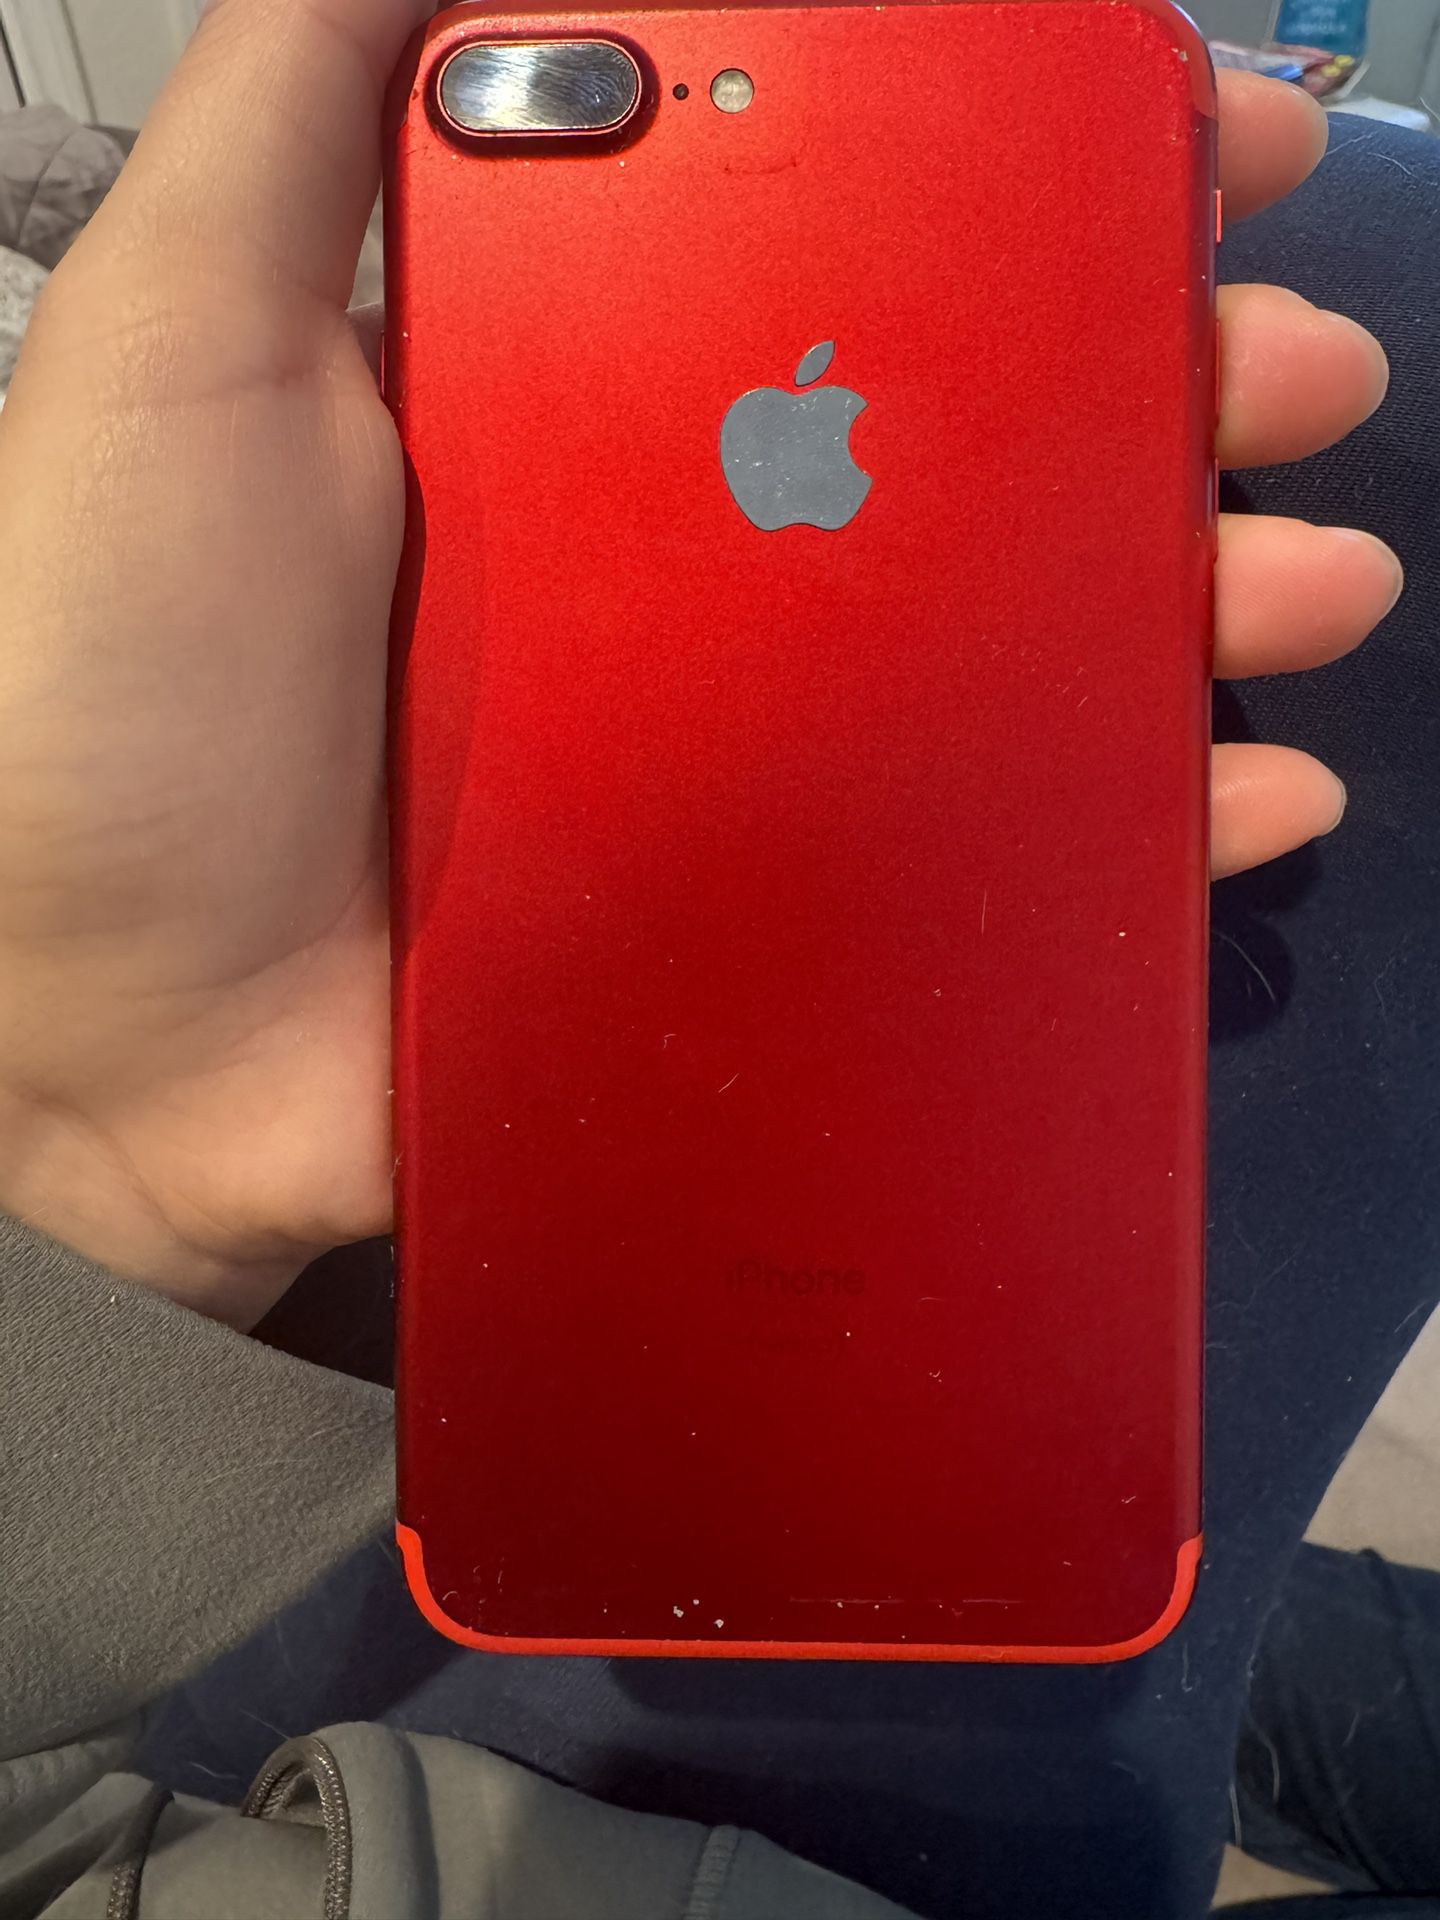 Red iPhone 7 Plus 128GB